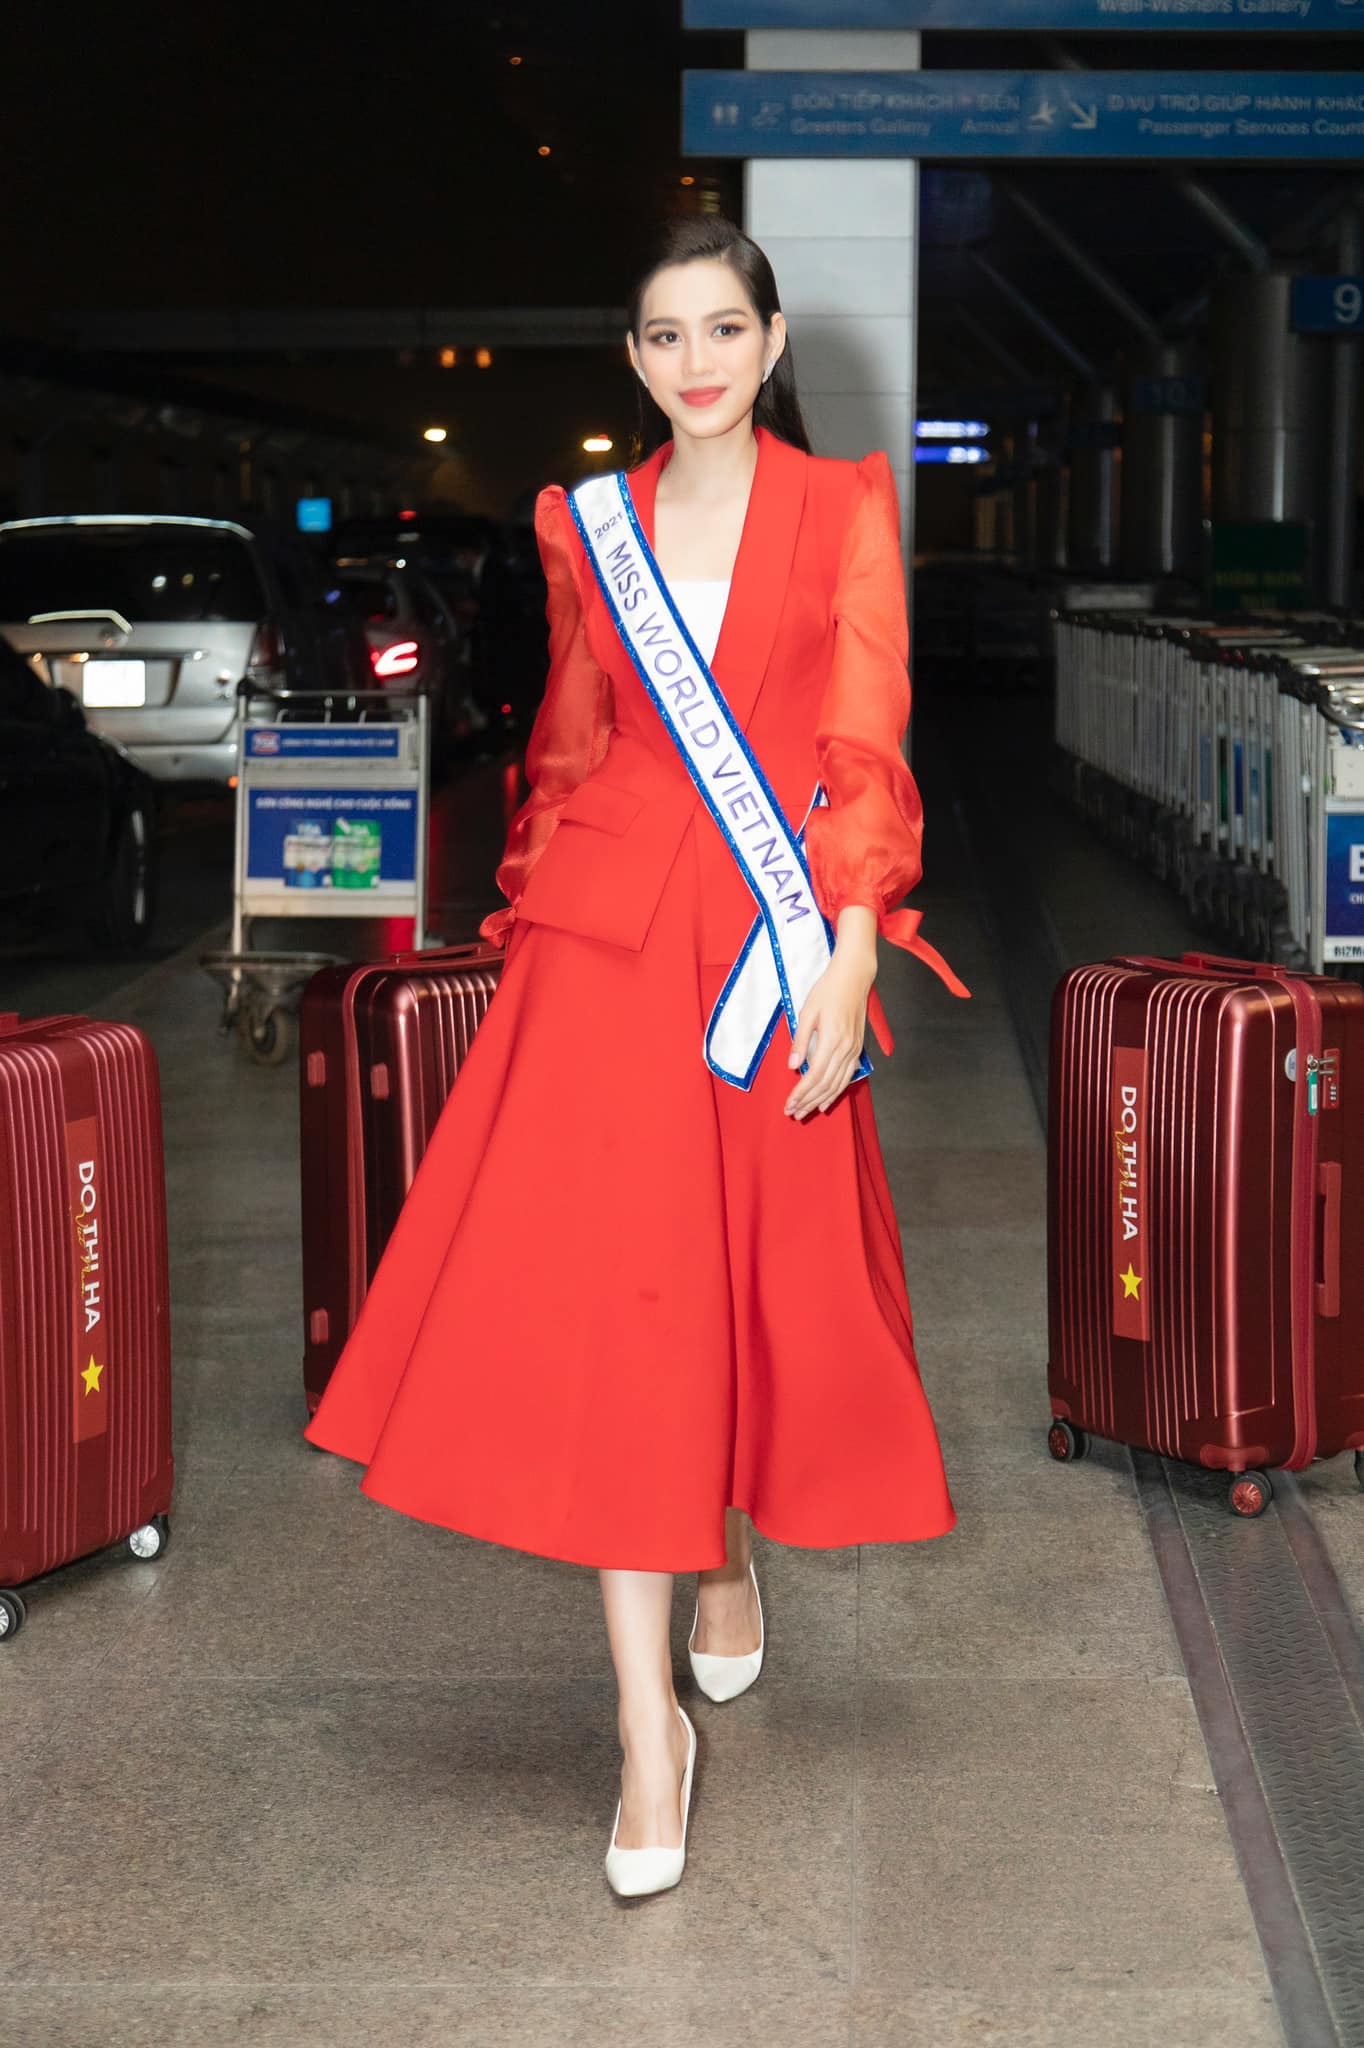 Sáng 20/11, Đỗ Thị Hà đã chính thức rời Việt Nam để tham dự đấu trường nhan sắc danh giá số 1 hành tinh - Miss World